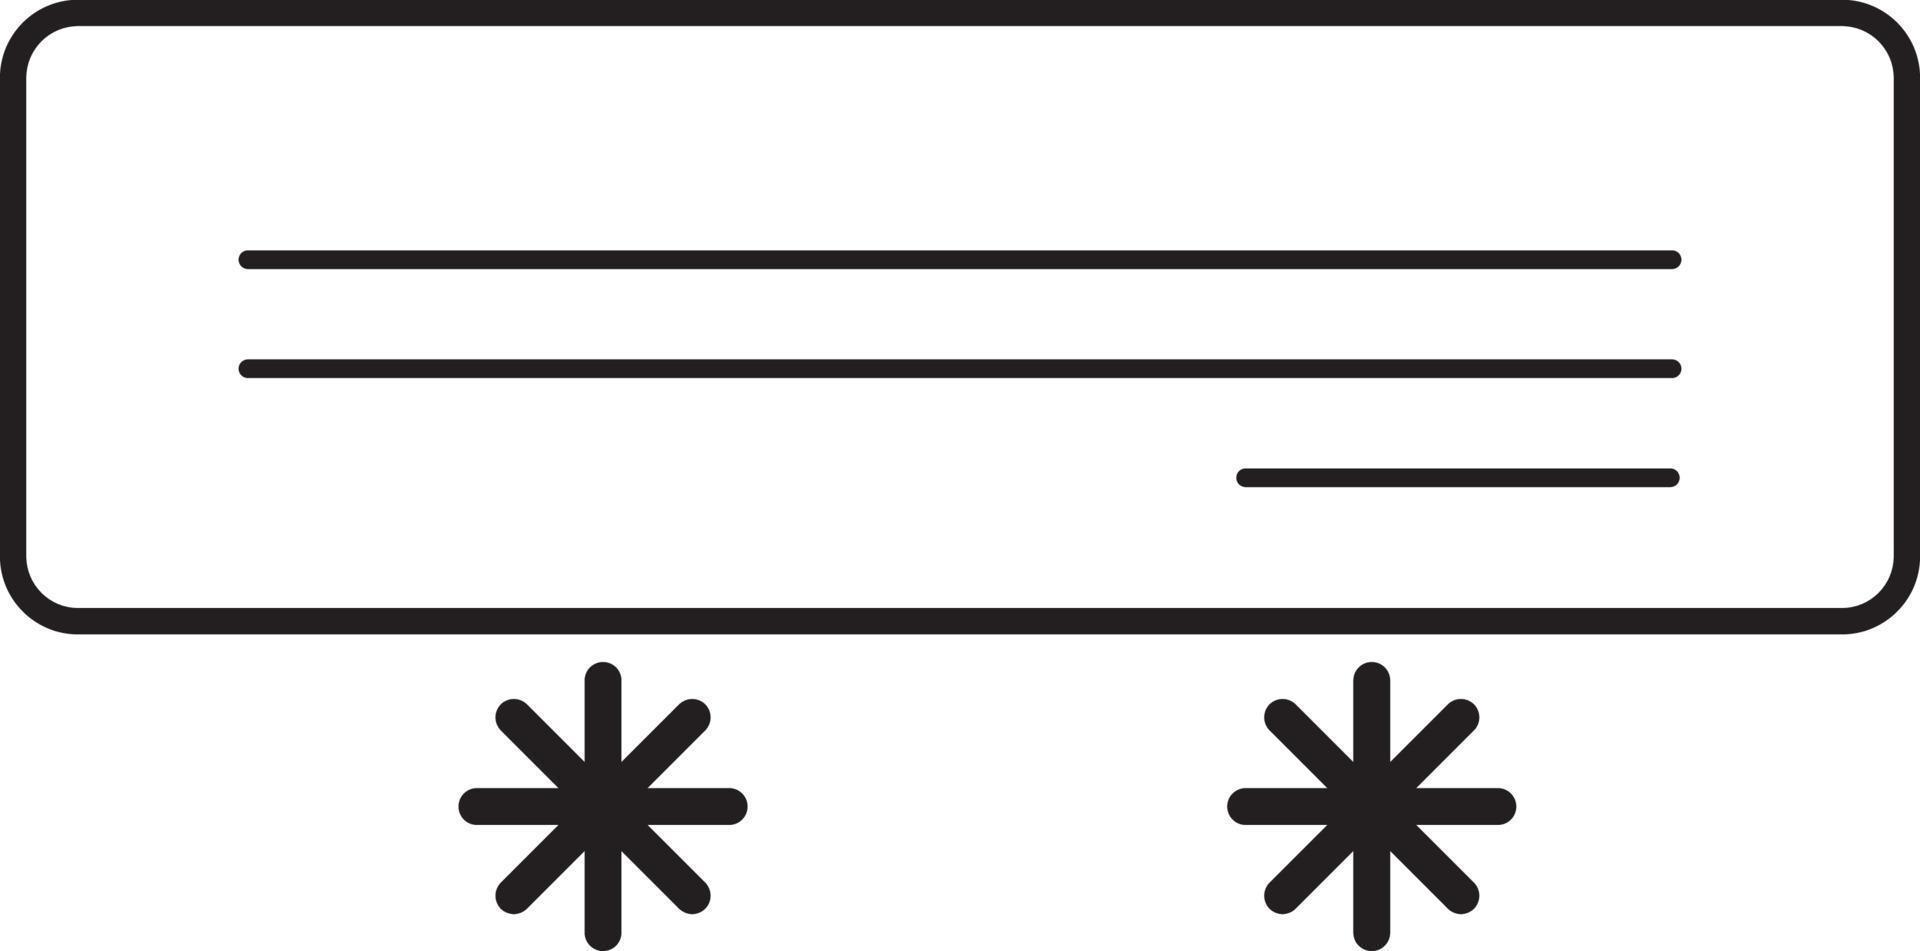 linea di vettore del condizionatore d'aria per web, presentazione, logo, simbolo dell'icona.